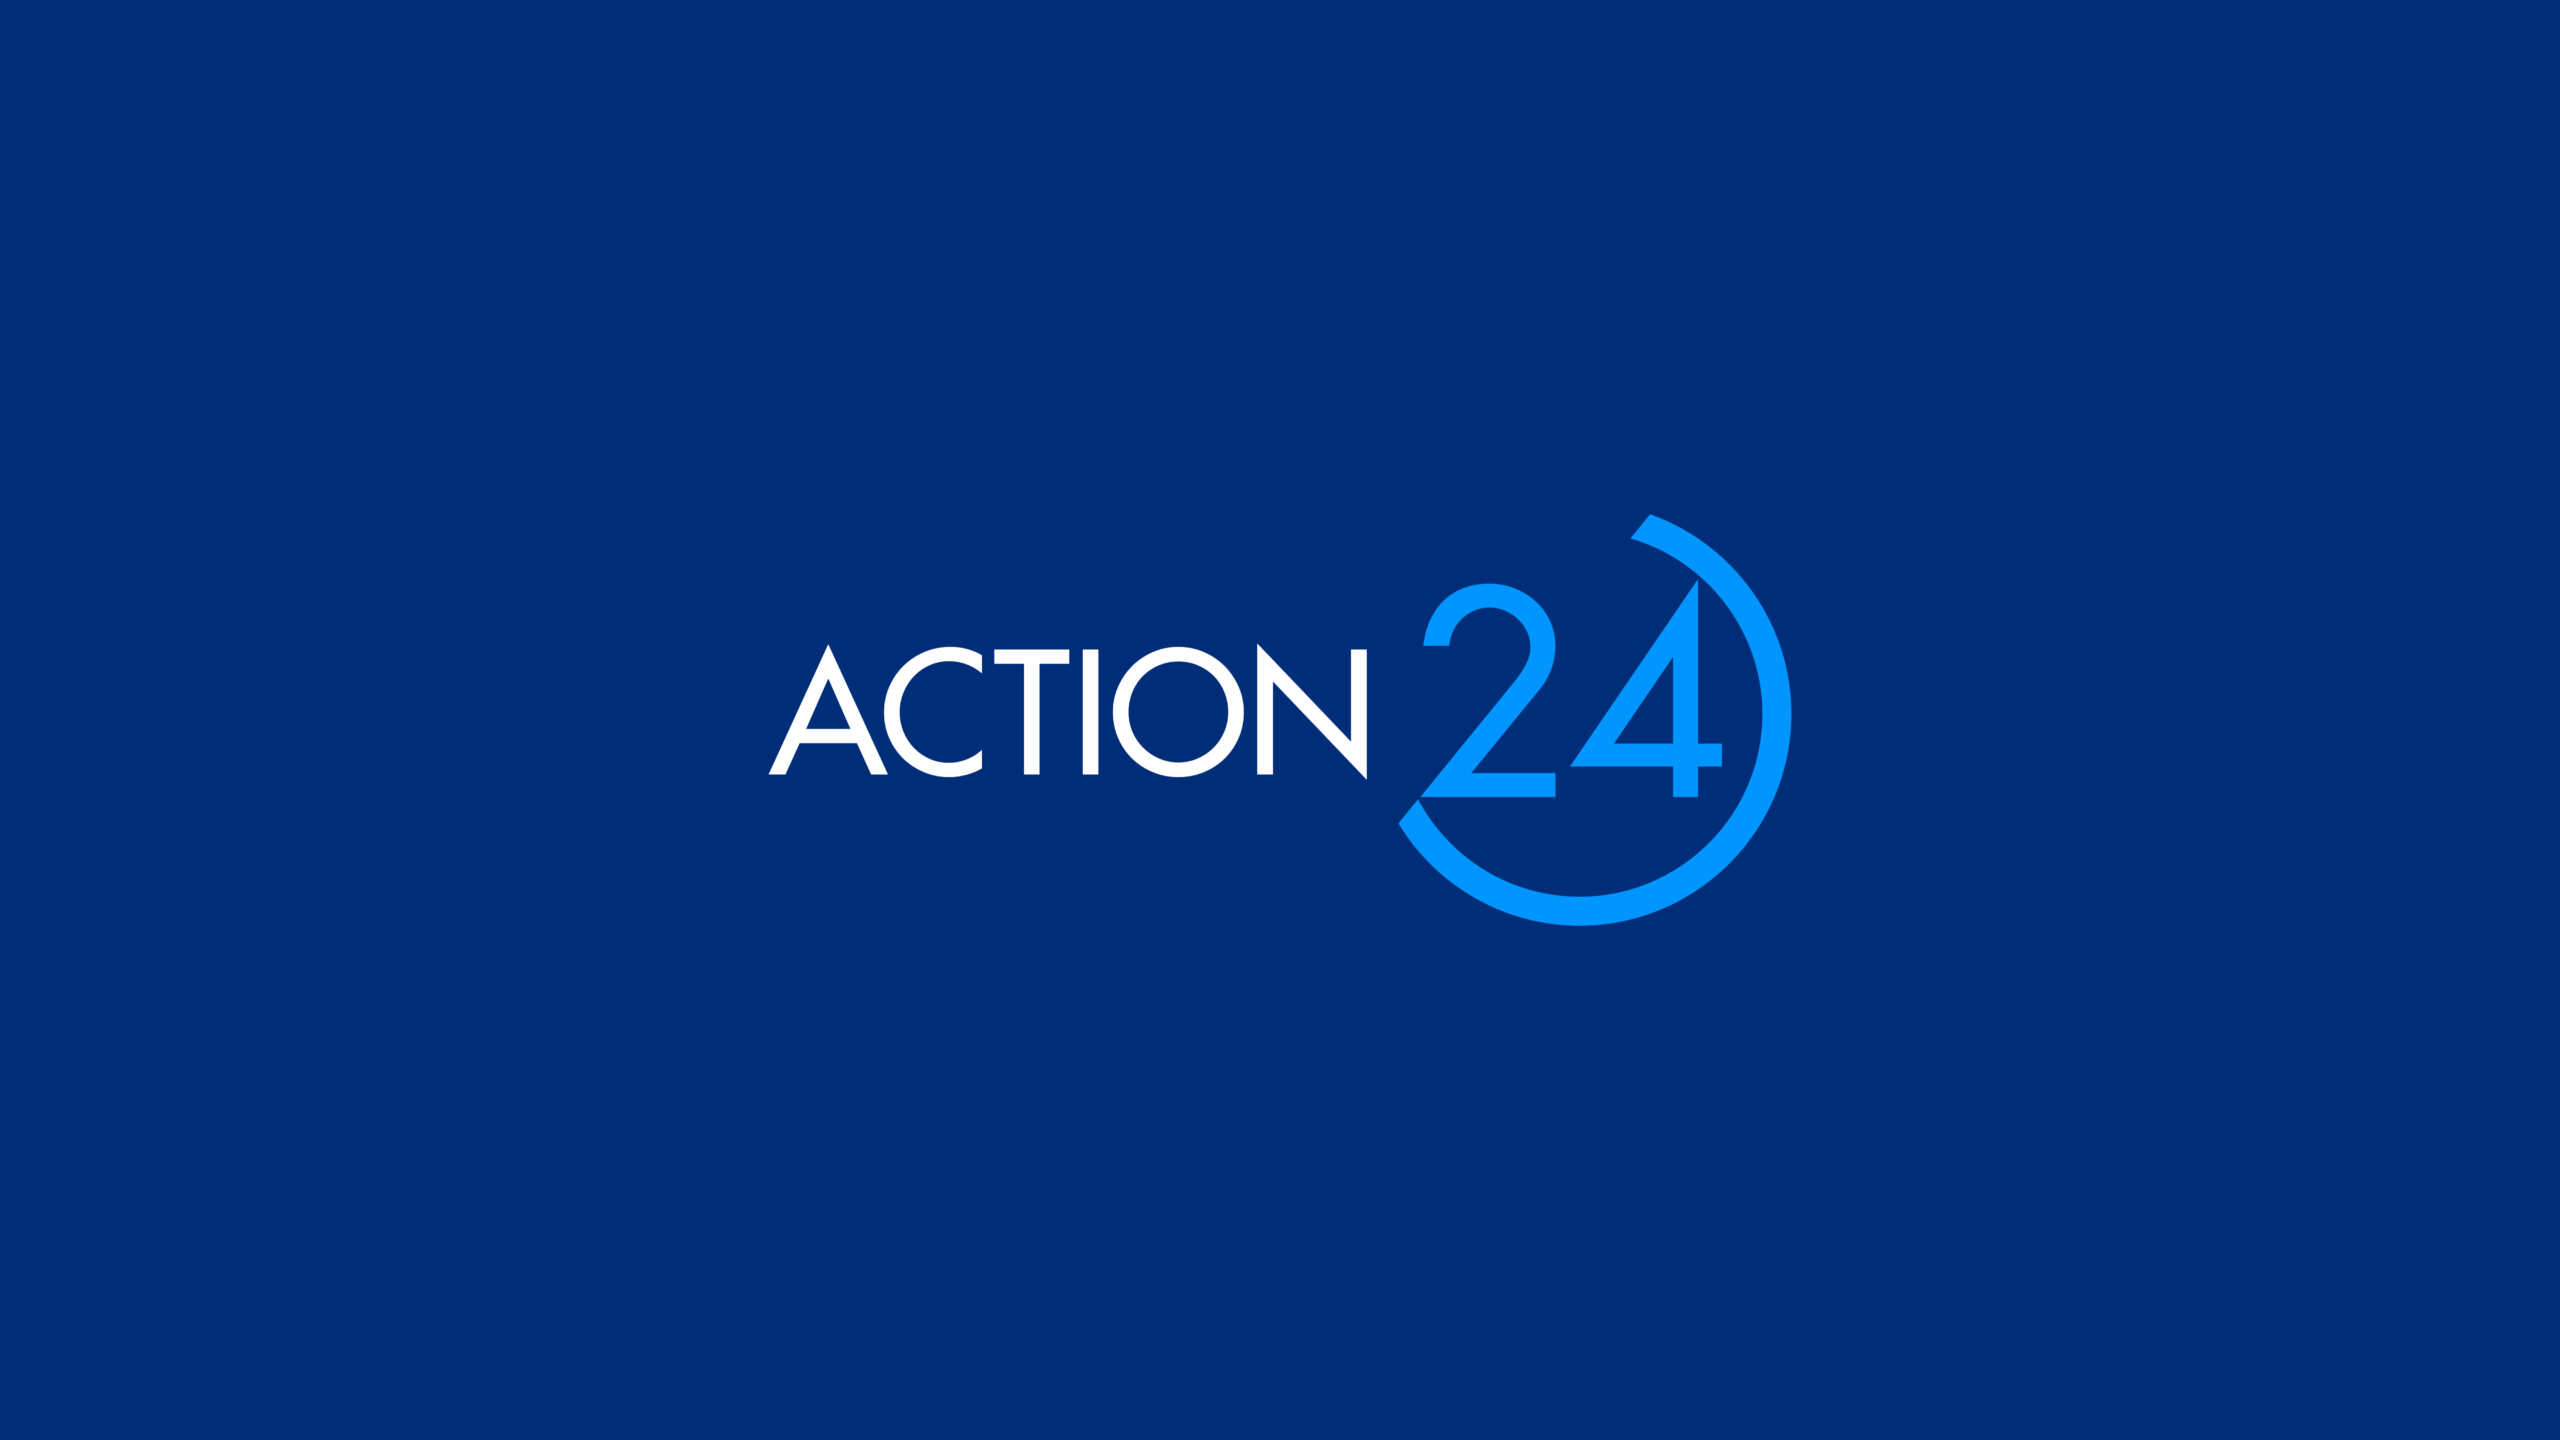 Τι πραγματικά έγινε στη Μάχη της Τριπολιτσάς; Η απάντηση μέσα από το ACTION 24 στο 5ο επεισόδιο του «ACTION Story»